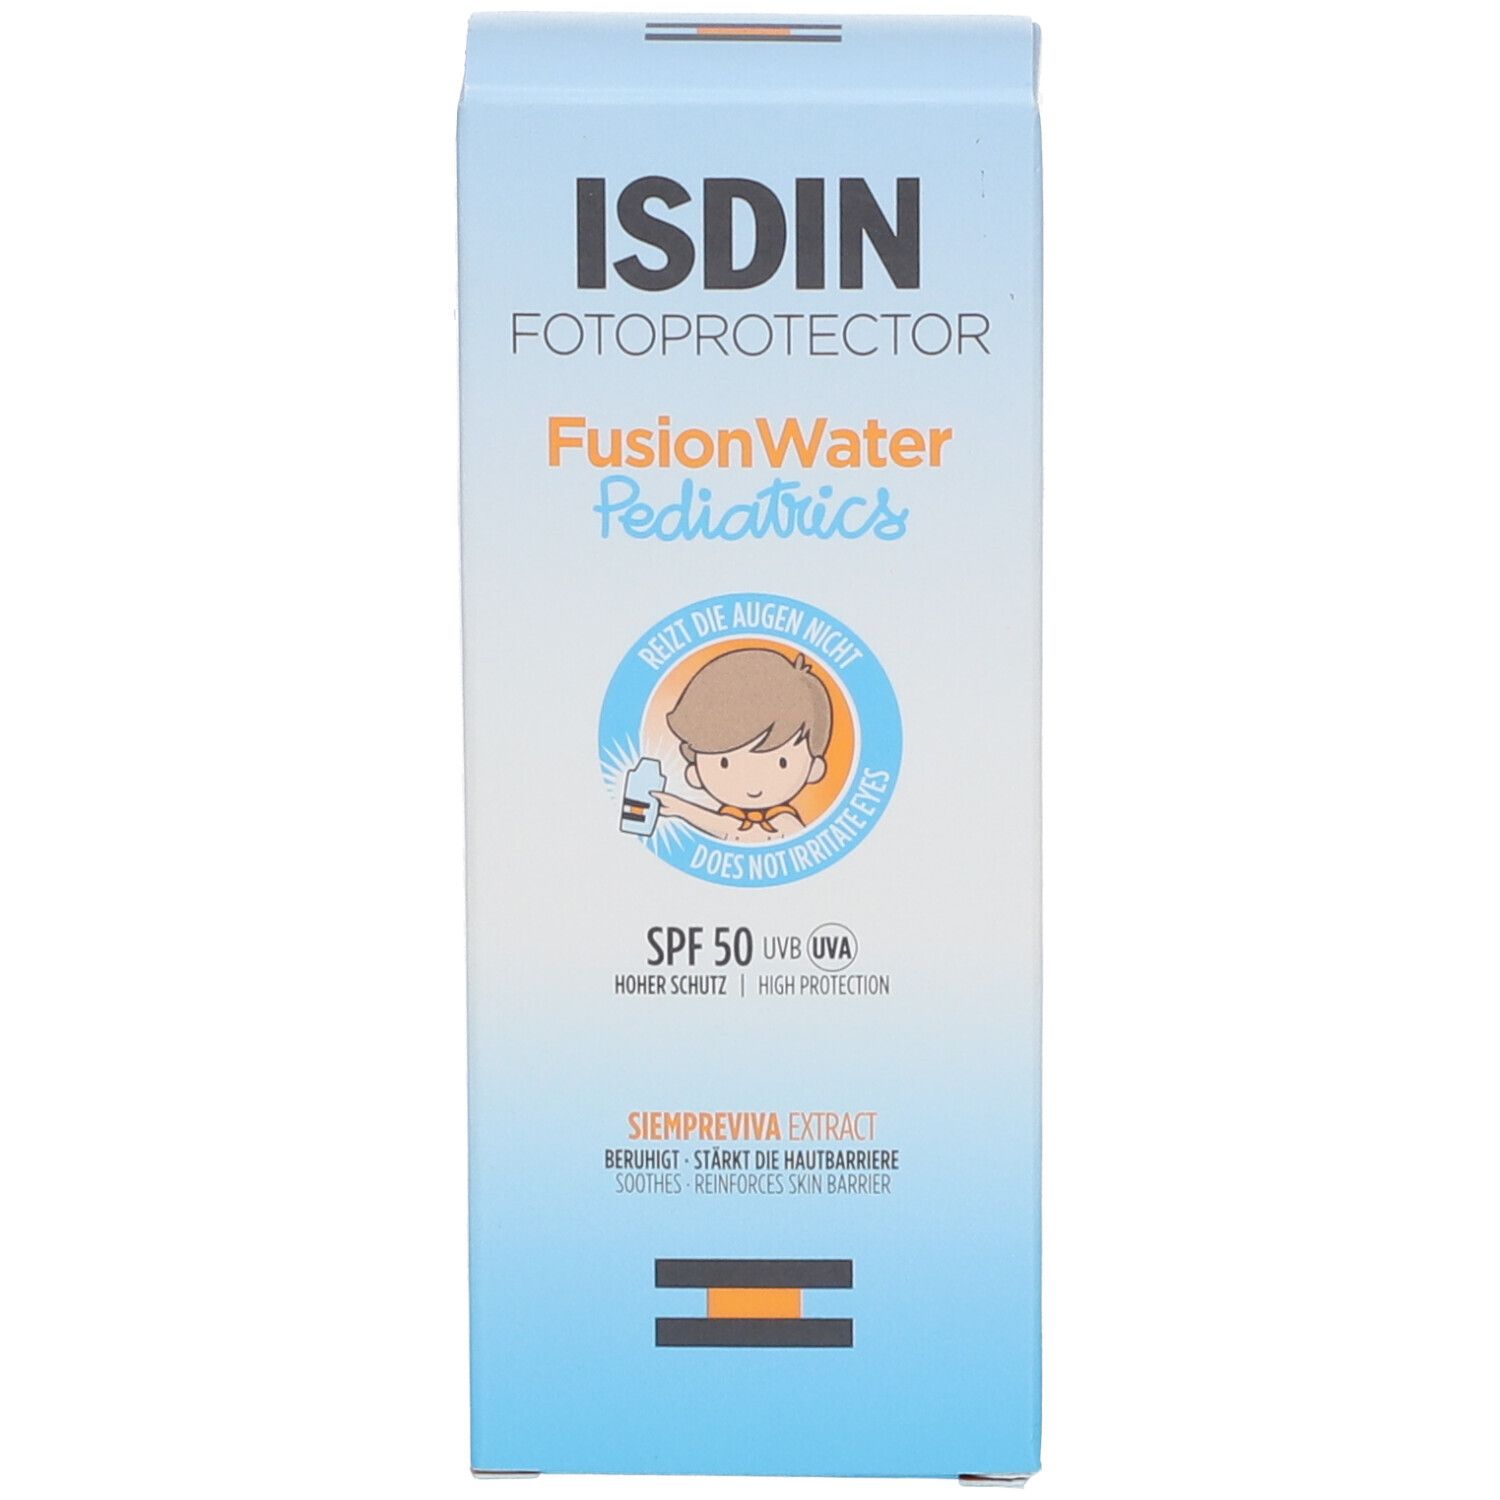 ISDIN Fotoprotector Pediatrics FusionWater ultraleichte Sonnencreme LSF50 für Kinder und Babys ab 6 Monaten